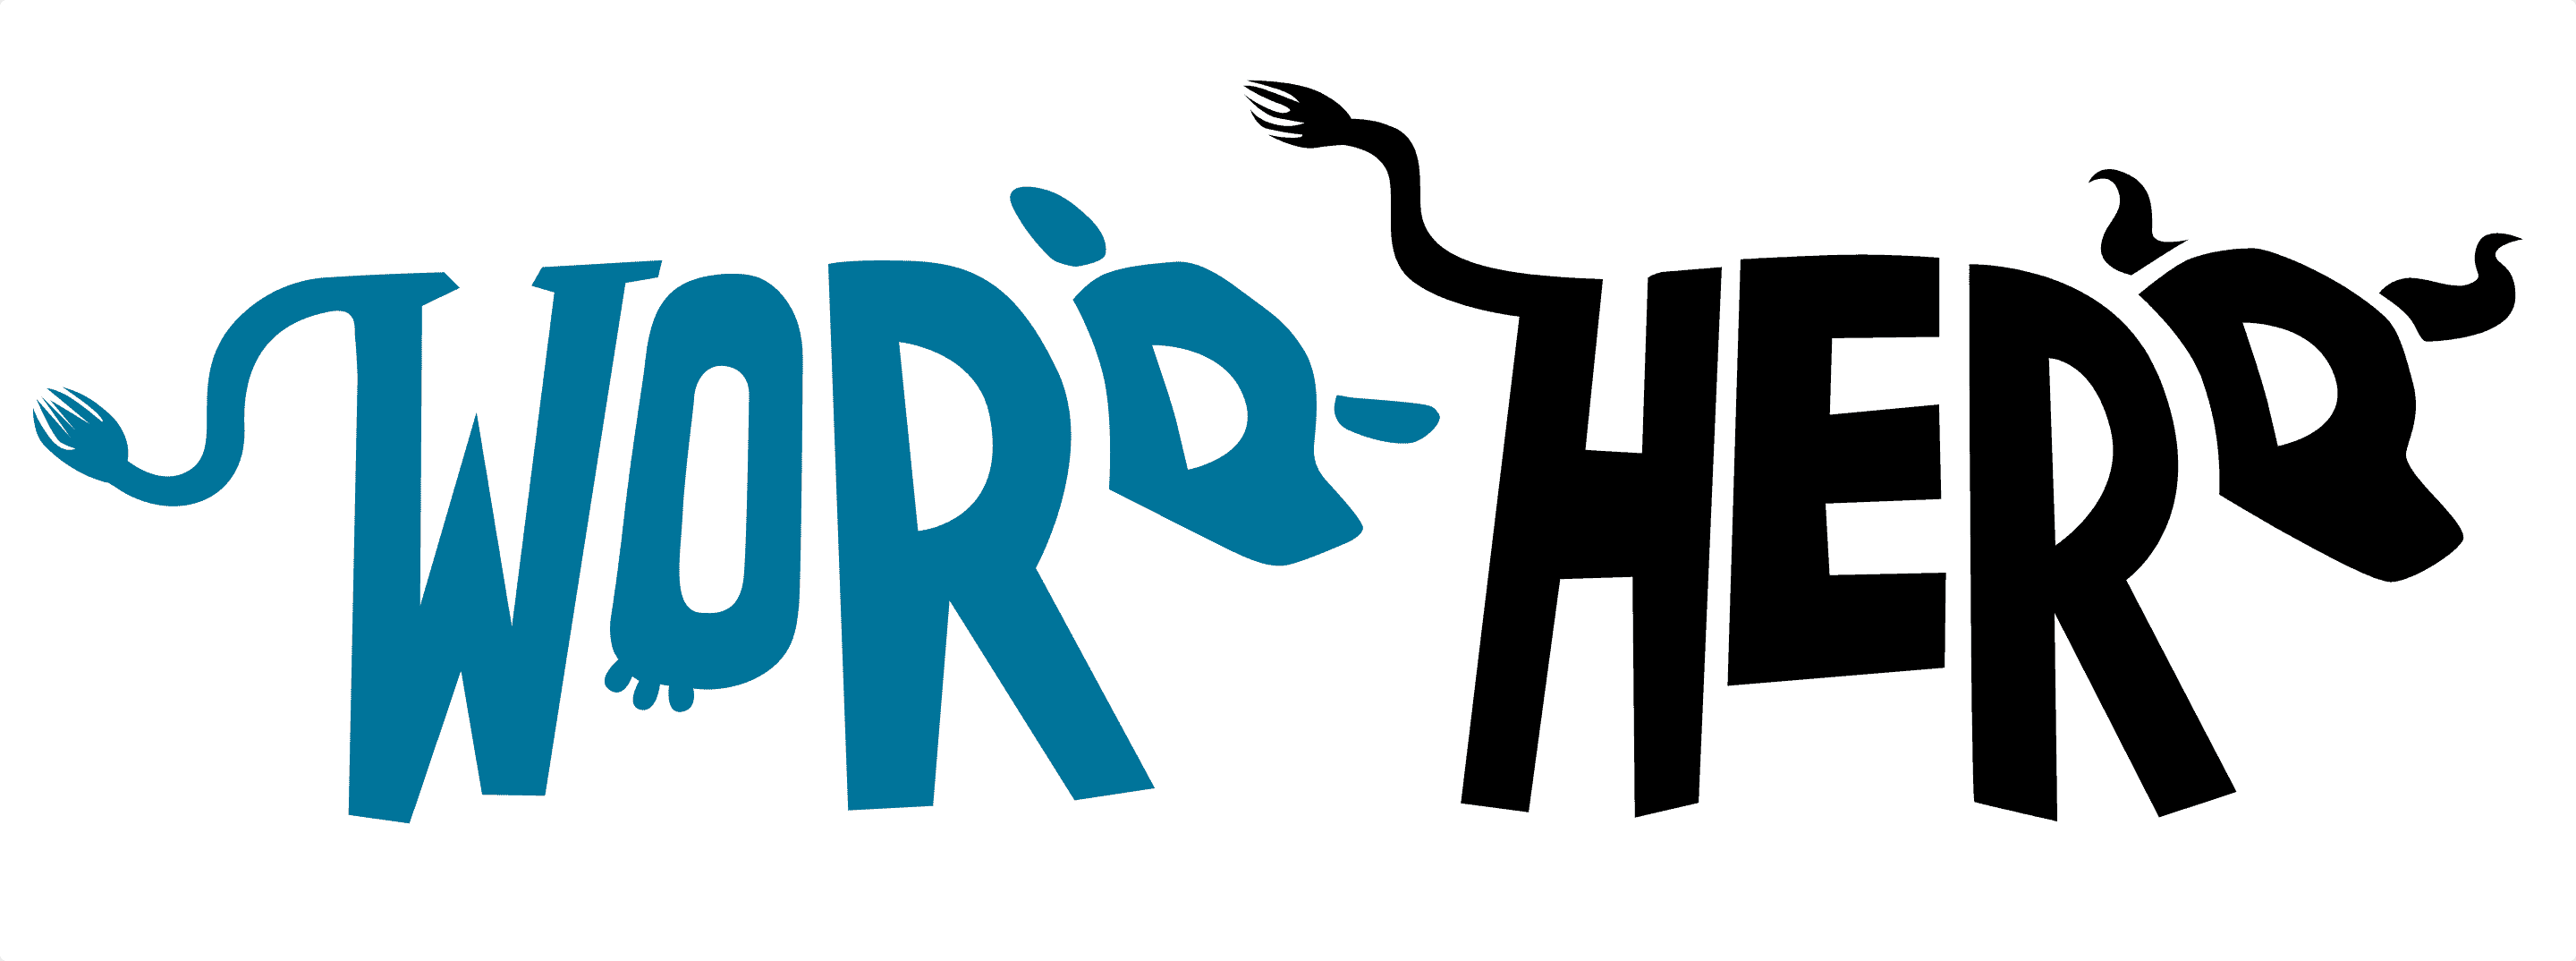 The WordHerd logo.